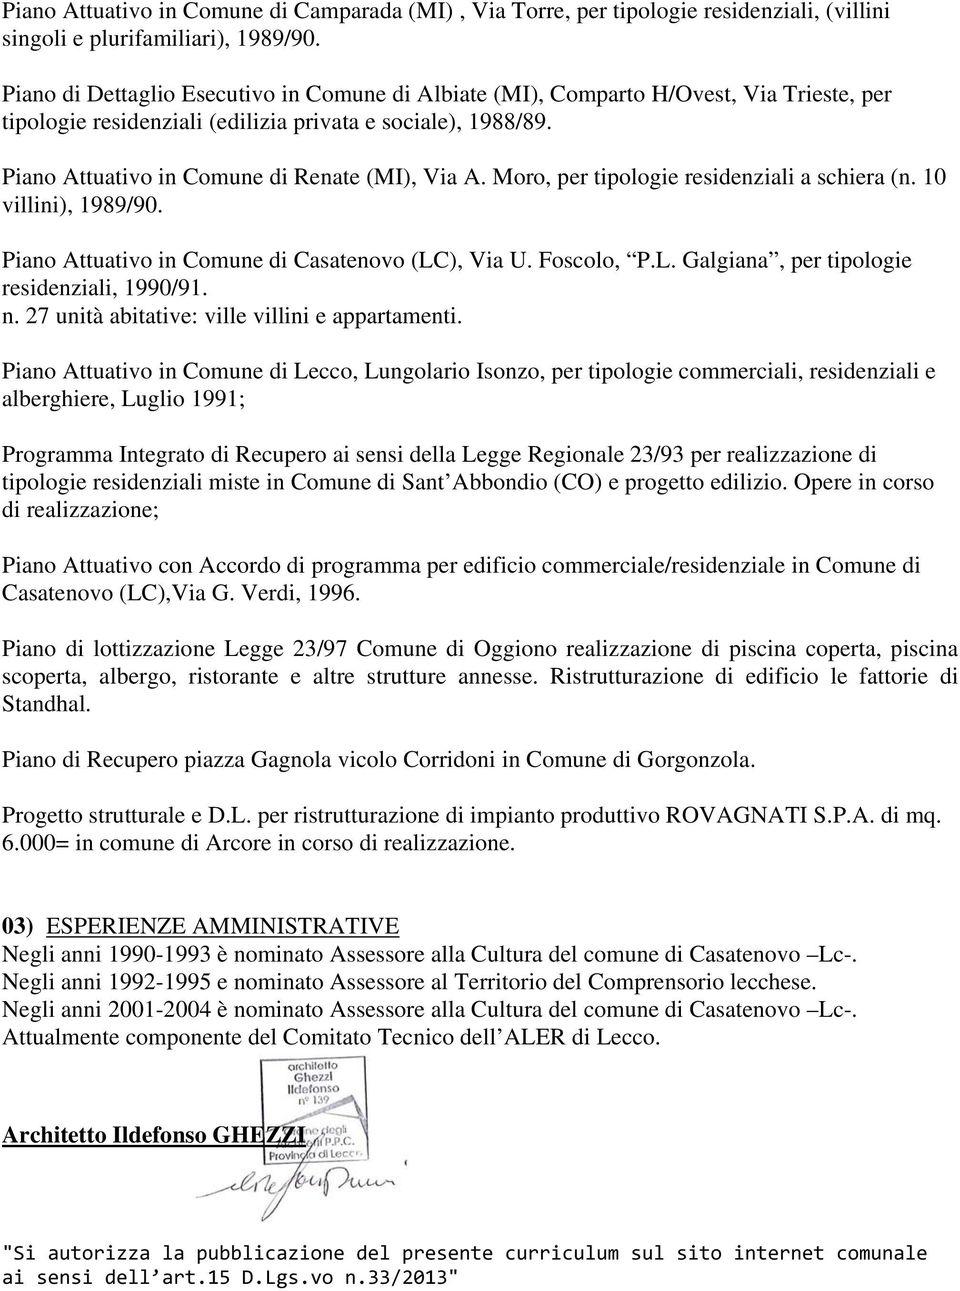 Piano Attuativo in Comune di Renate (MI), Via A. Moro, per tipologie residenziali a schiera (n. 10 villini), 1989/90. Piano Attuativo in Comune di Casatenovo (LC